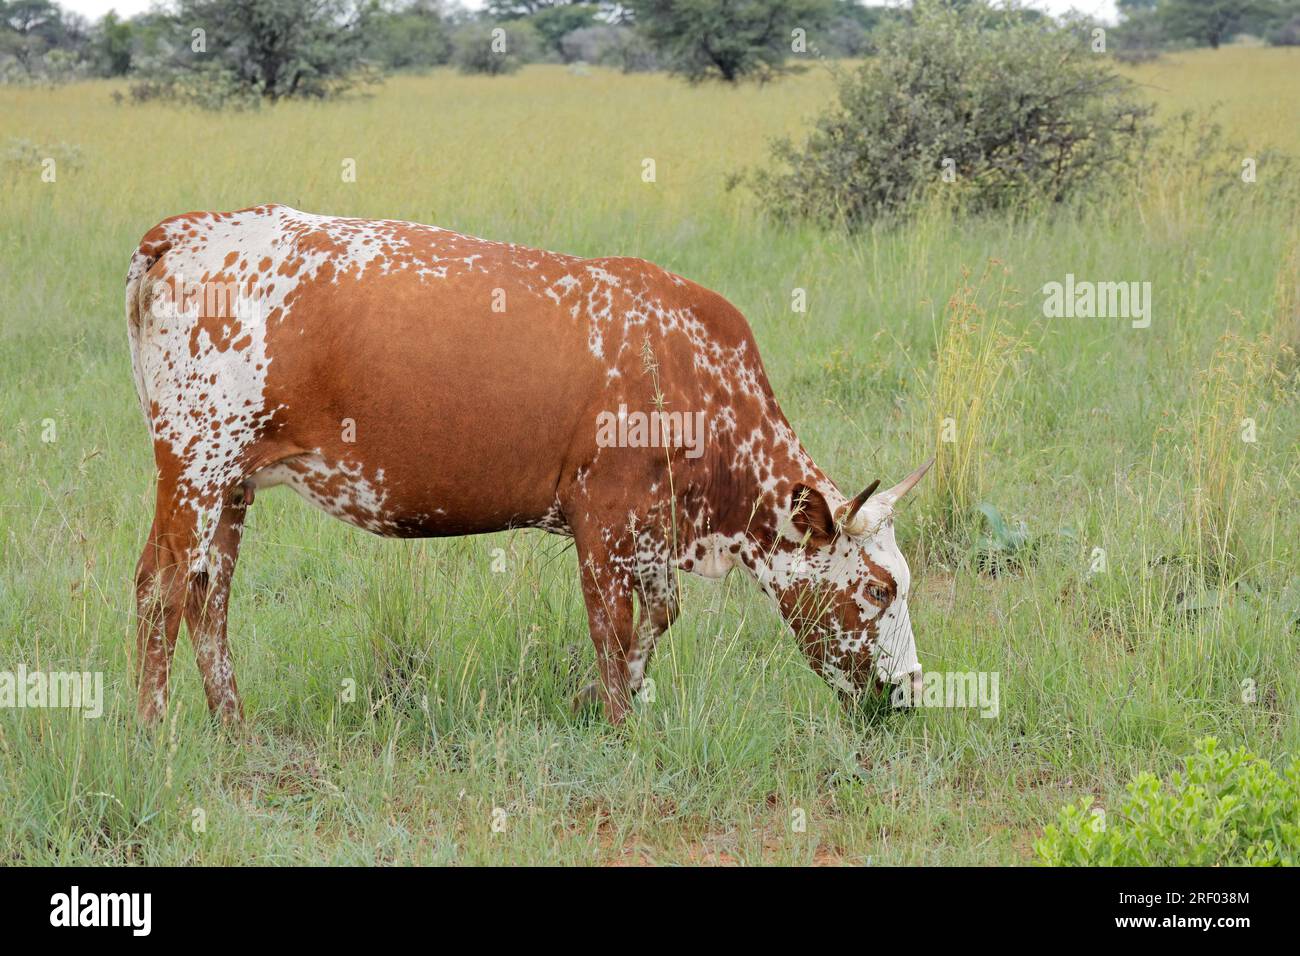 Vache Nguni - élevage de bovins indigènes d'Afrique du Sud - sur une ferme rurale Banque D'Images